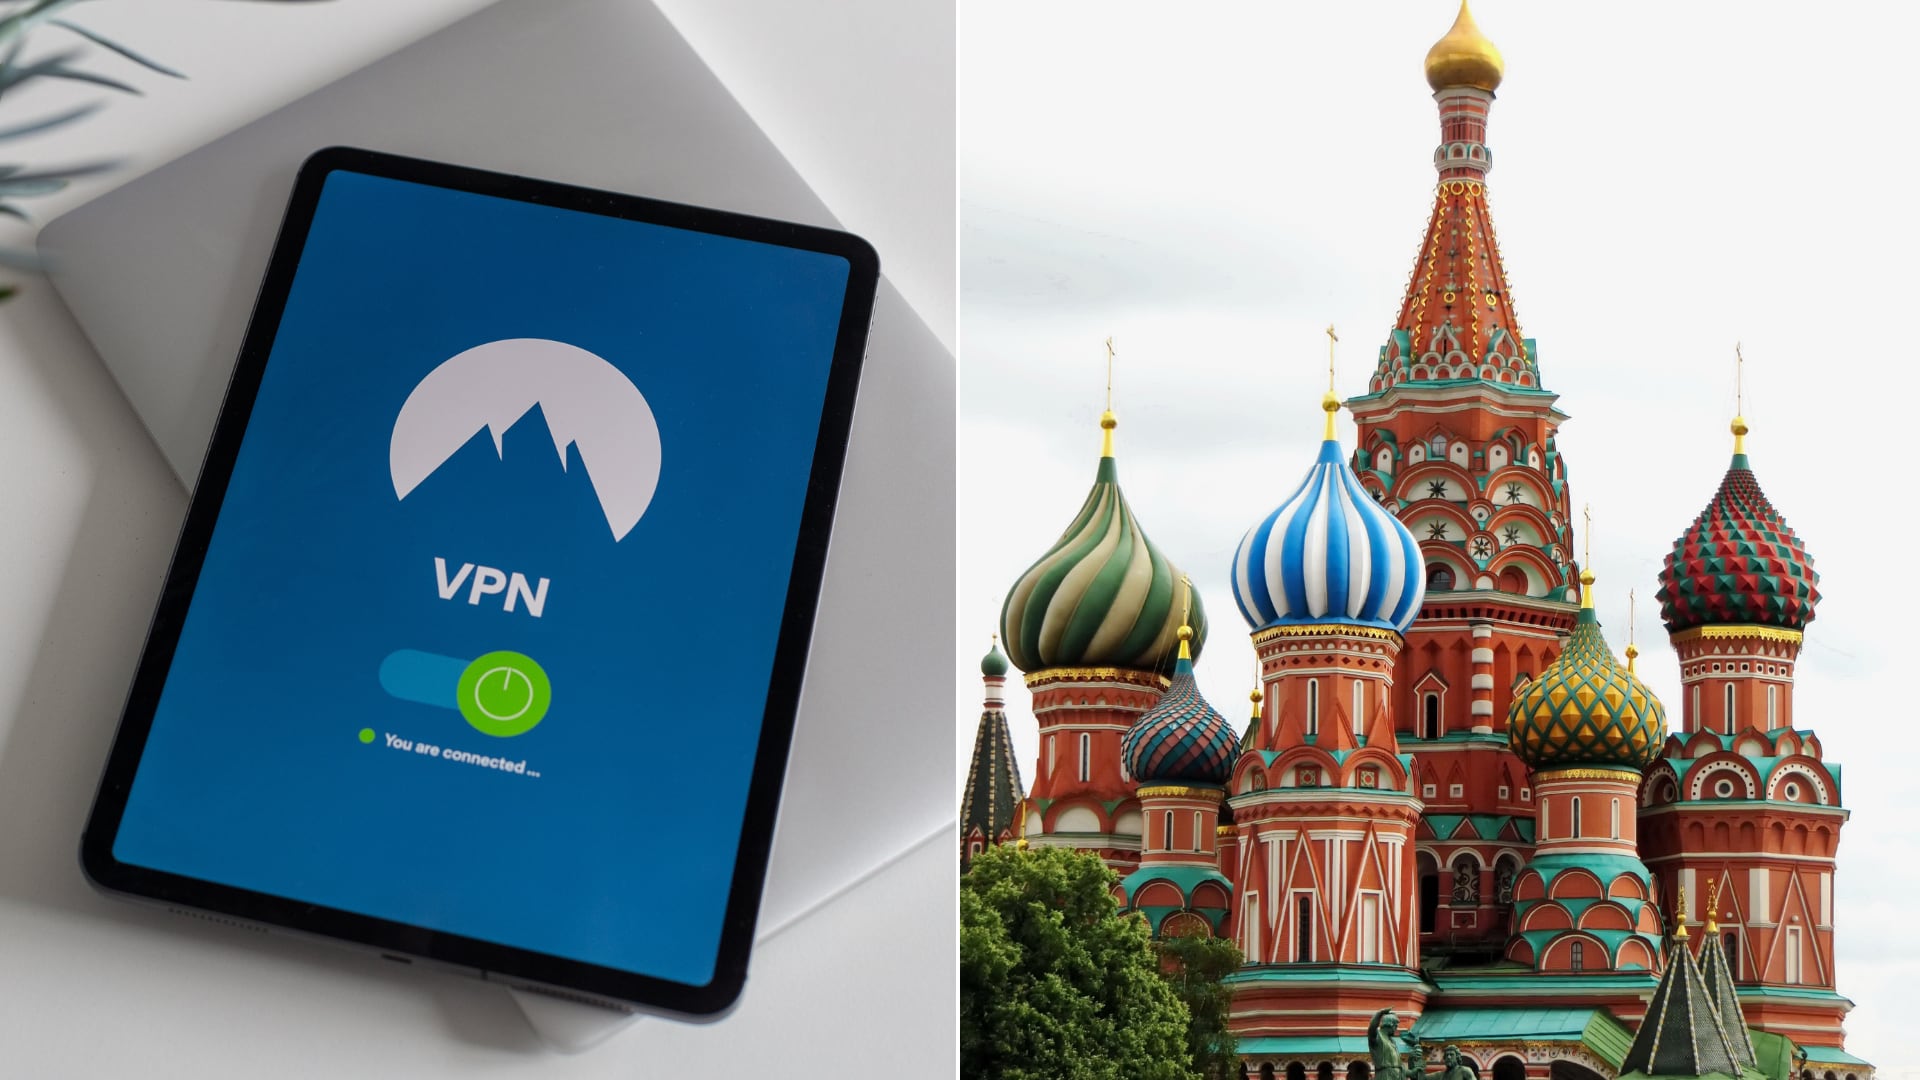 Rusia ordenó eliminar aplicaciones VPN de la App Store por contenido ilegal, afectando servicios como NordVPN y Proton VPN.